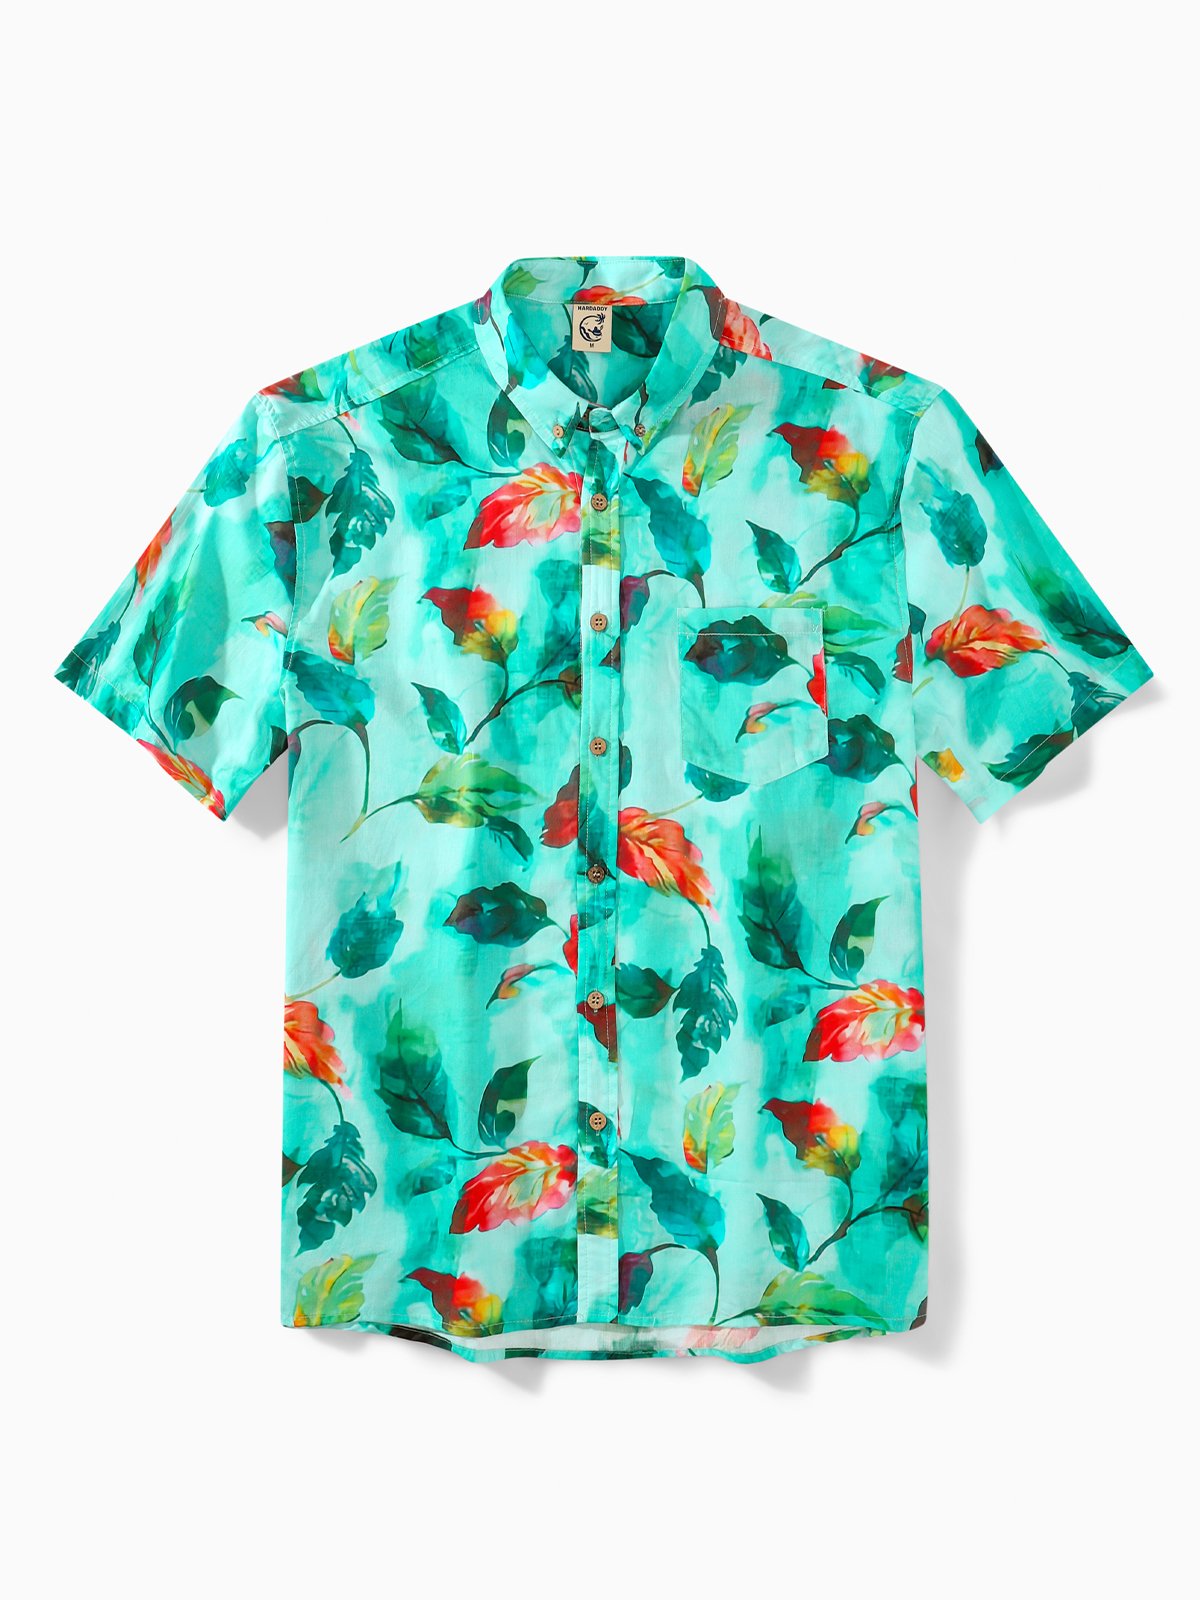 Hardaddy® Cotton Leaf Oxford Shirt